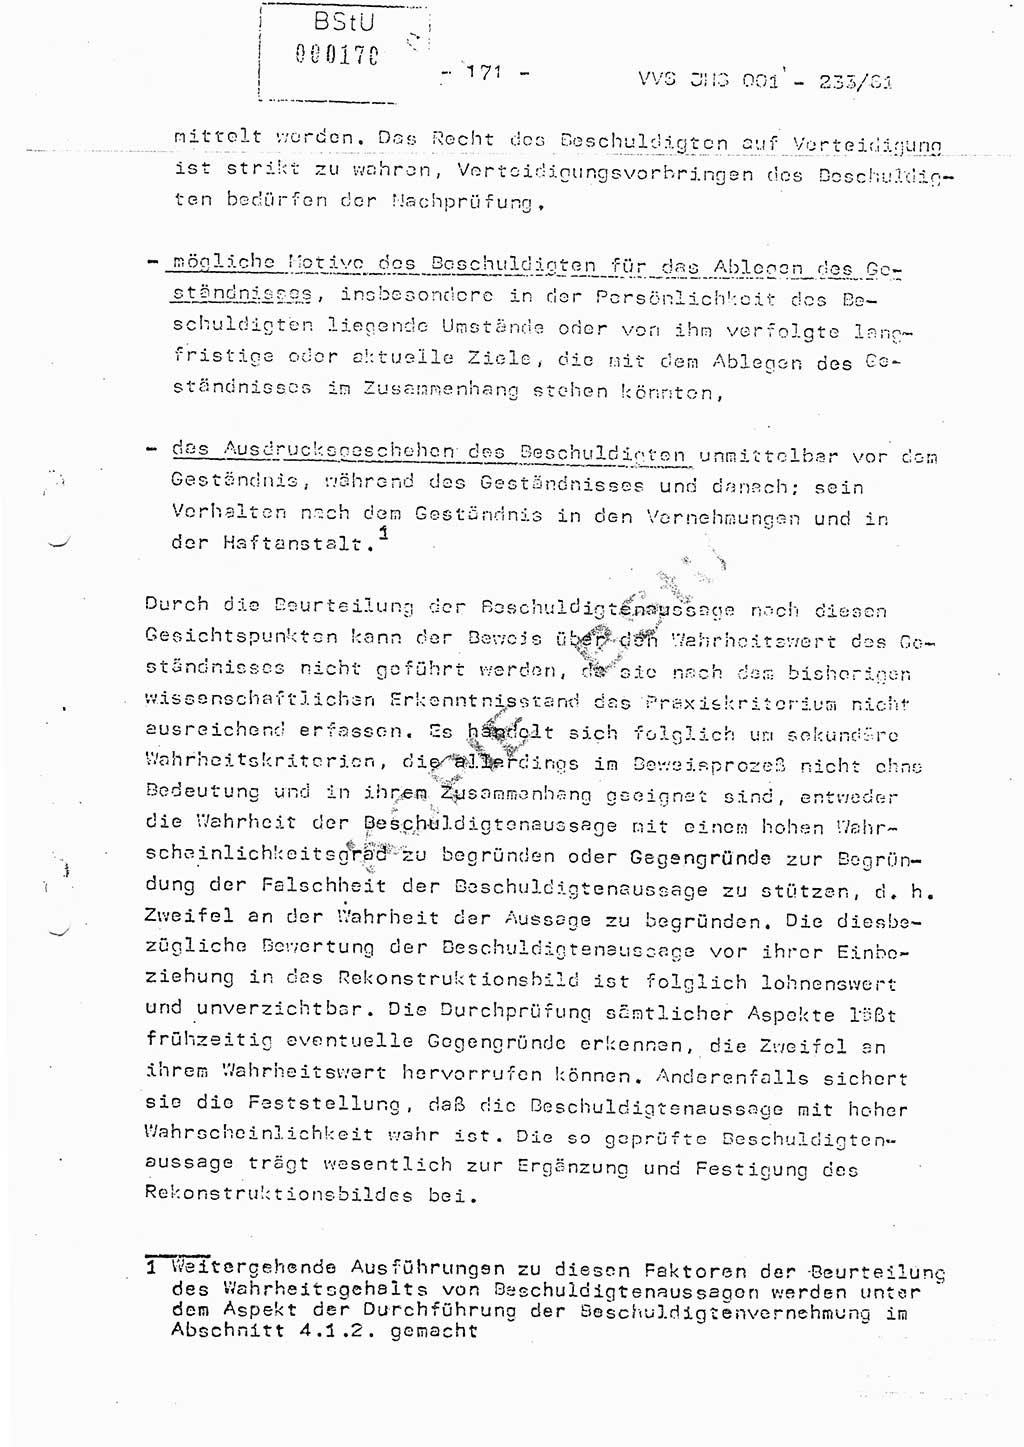 Dissertation Oberstleutnant Horst Zank (JHS), Oberstleutnant Dr. Karl-Heinz Knoblauch (JHS), Oberstleutnant Gustav-Adolf Kowalewski (HA Ⅸ), Oberstleutnant Wolfgang Plötner (HA Ⅸ), Ministerium für Staatssicherheit (MfS) [Deutsche Demokratische Republik (DDR)], Juristische Hochschule (JHS), Vertrauliche Verschlußsache (VVS) o001-233/81, Potsdam 1981, Blatt 171 (Diss. MfS DDR JHS VVS o001-233/81 1981, Bl. 171)